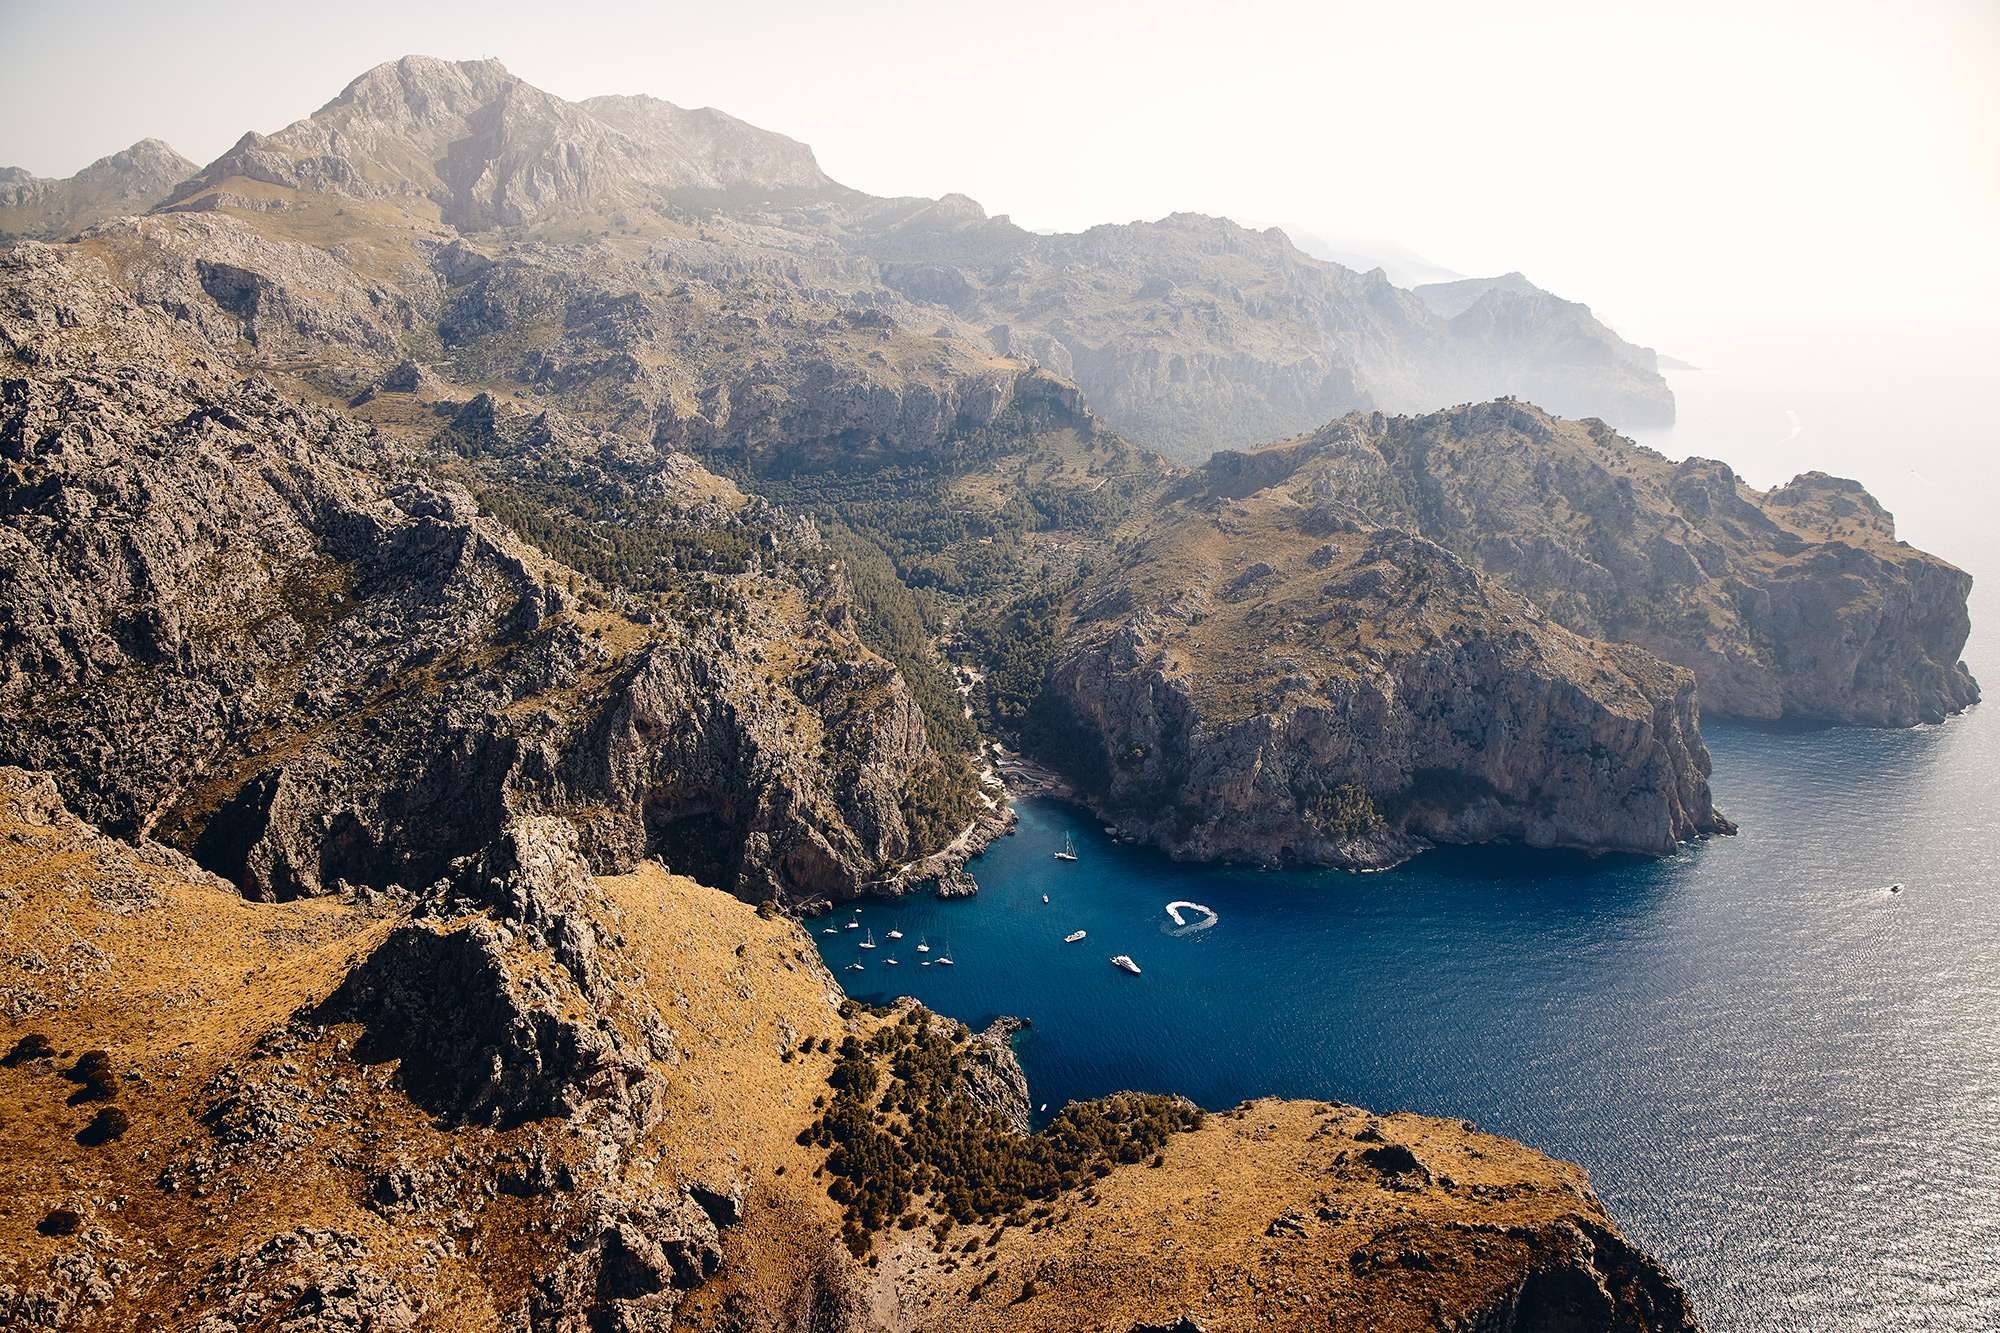 Sa Calobra - Where 1500m mountains rise out of the sea, Mallorca